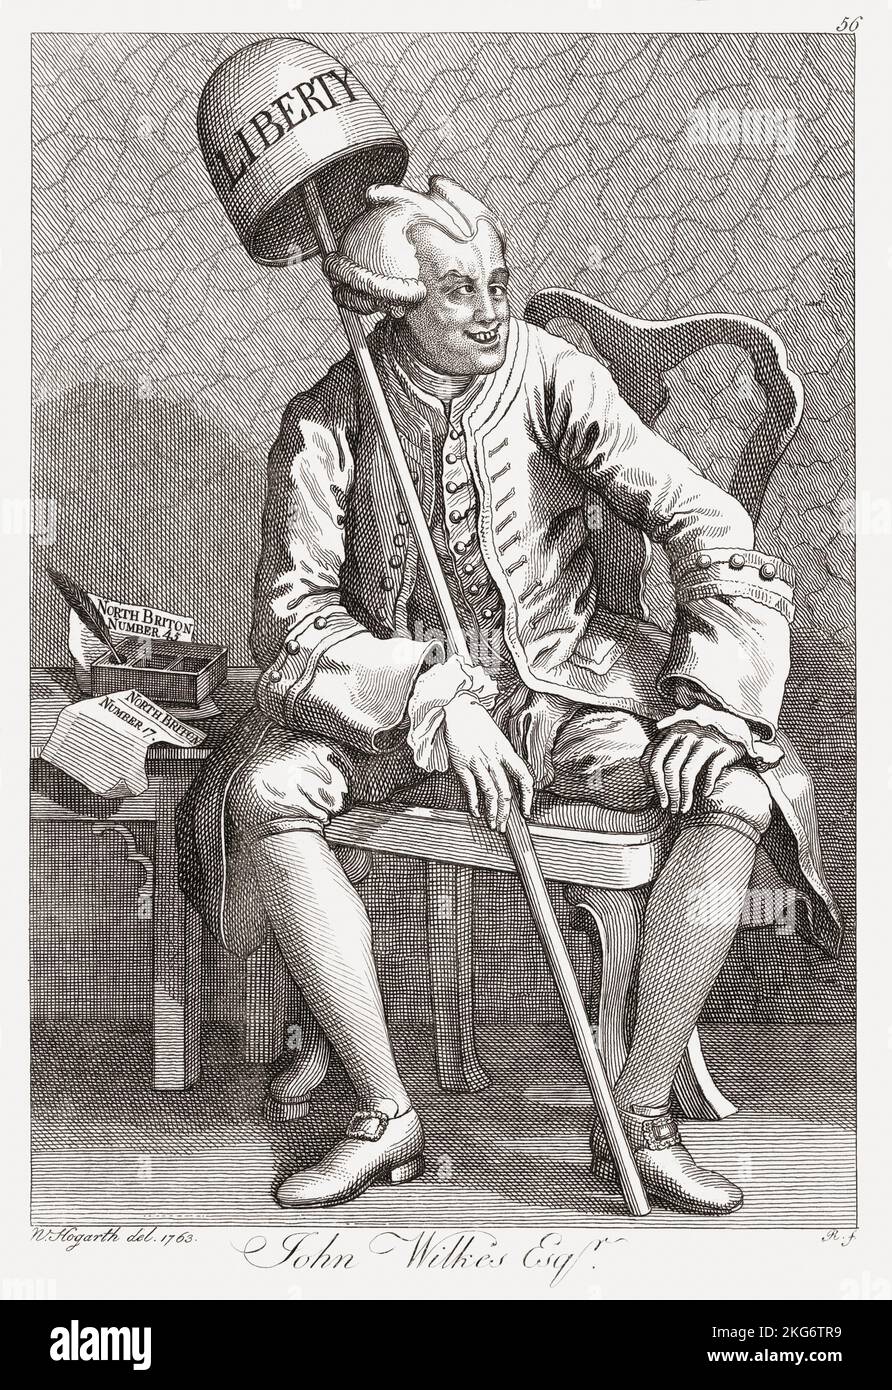 John Wilkes, 1725 – 1797. Englische Radikale, Journalistin und Politikerin. Nach einem satirischen Stich von William Hogarth. Stockfoto